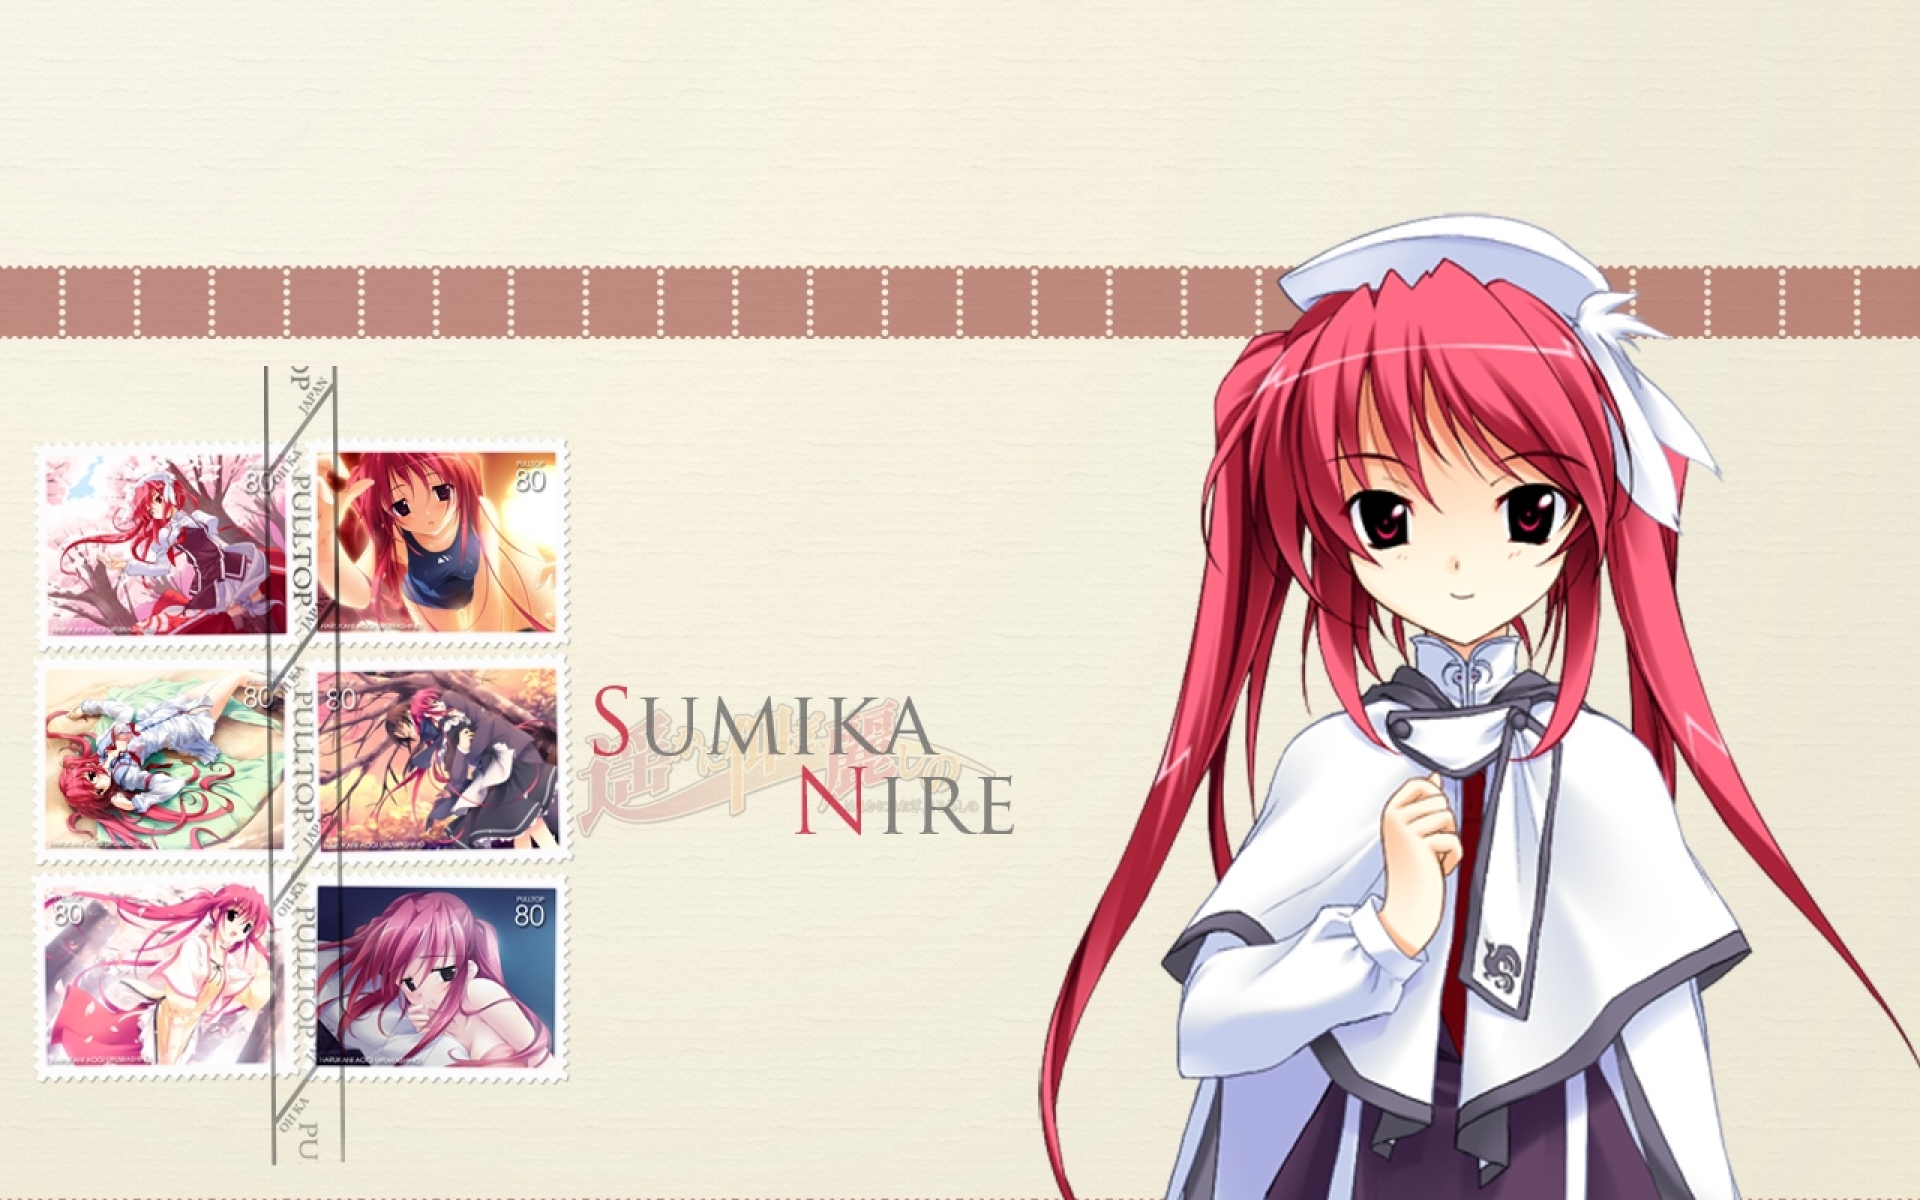 Картинки Sumika nire, девушка, молодые, розовые волосы, челки, улыбка фото и обои на рабочий стол